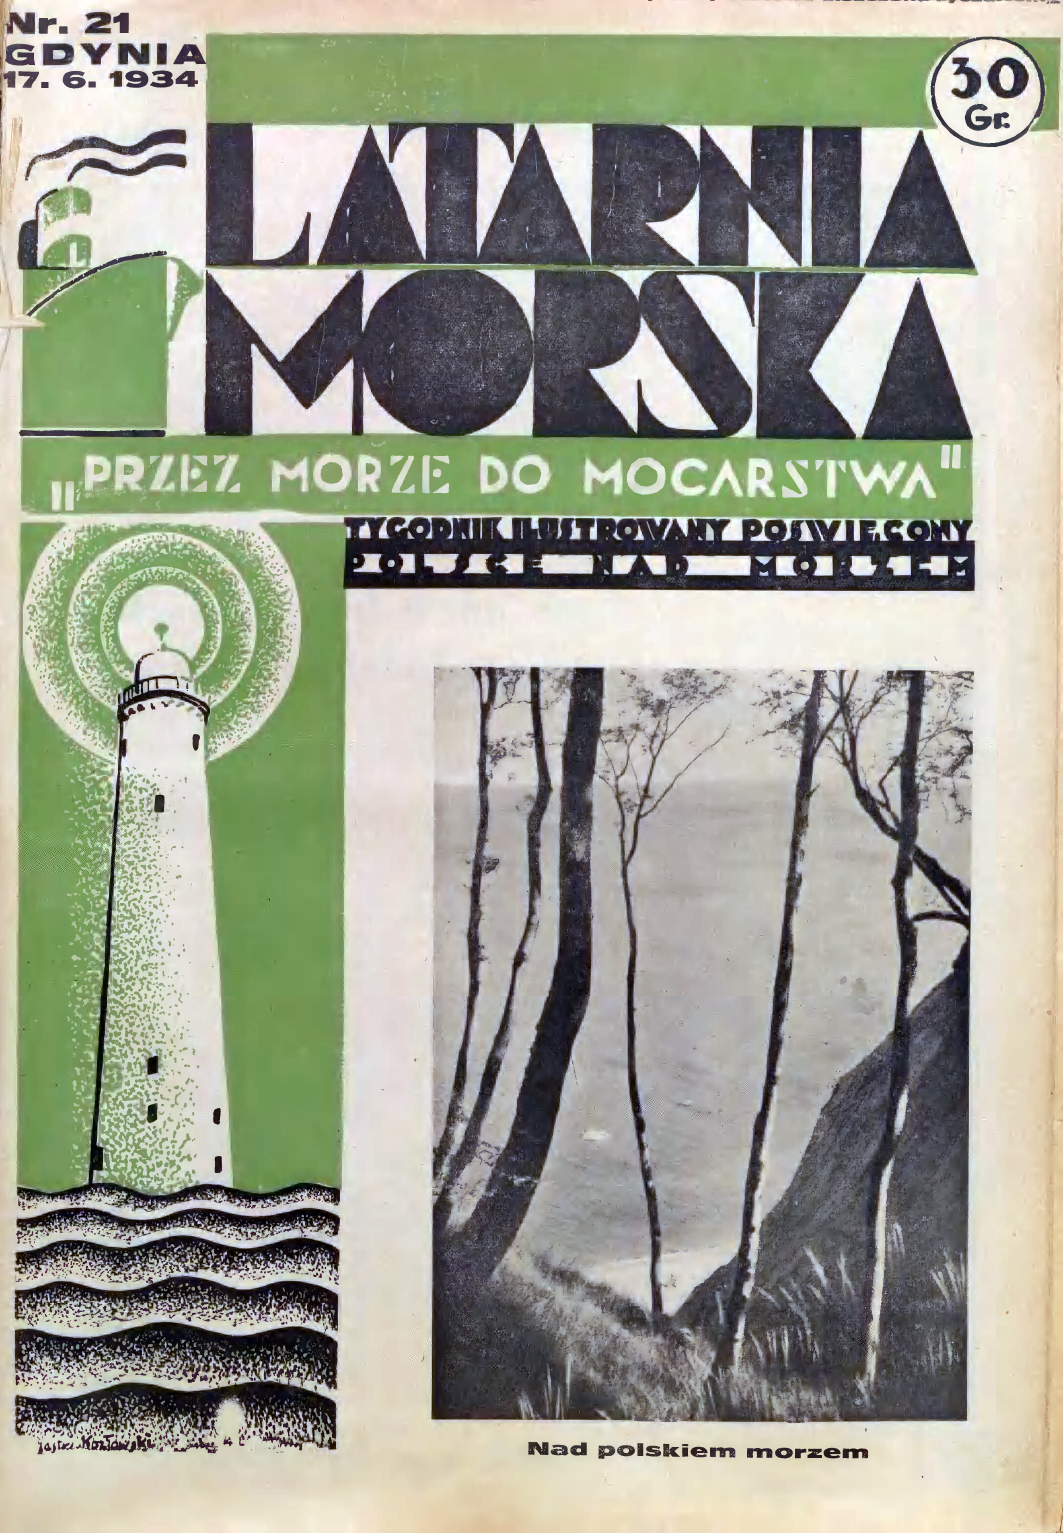  Latarnia Morska: tygodnik ilustrowany poświęcony Polsce nad morzem. – Gdynia : Balto Polak – Zakłady Graficzne i Wydawnicze, 1934, nr 21